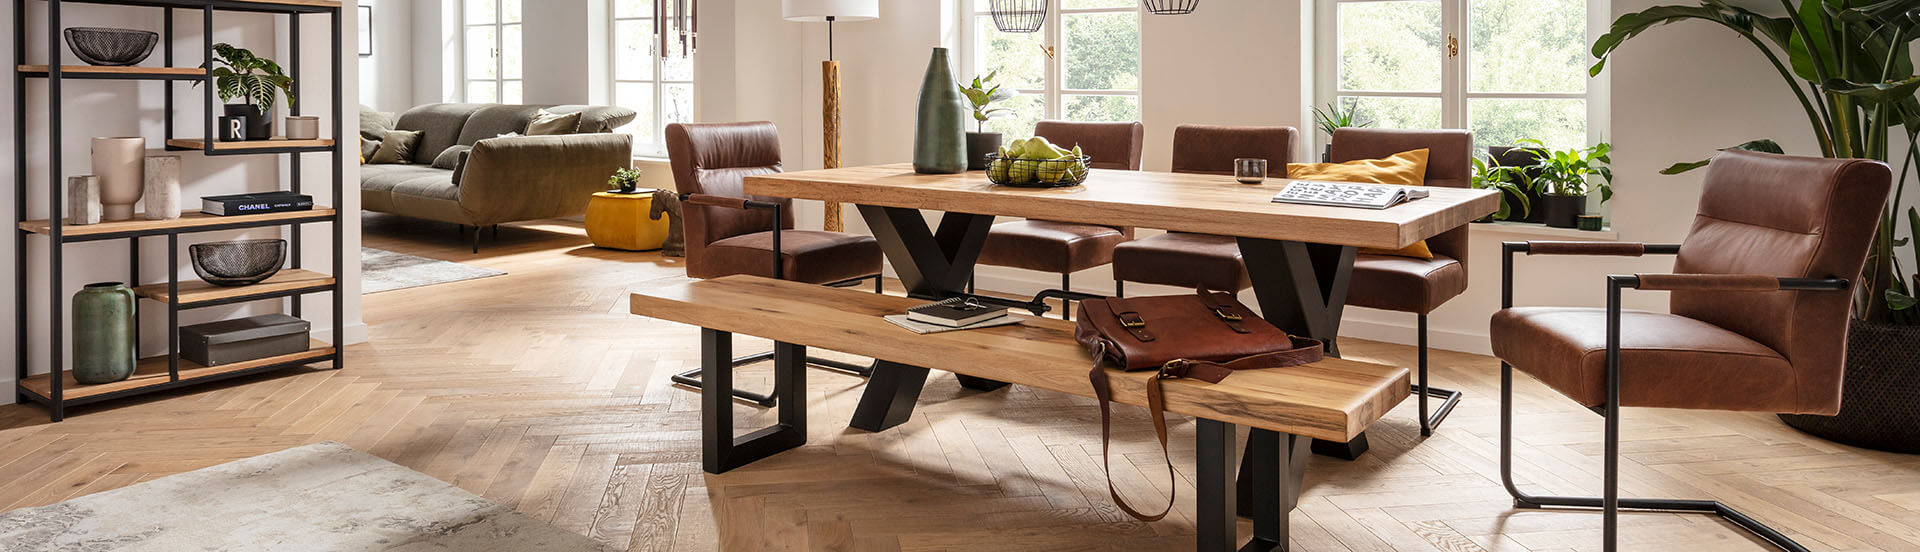 Möbel GUNST - Bänke: Eckbank aus schwarzem Leder mit Holzgestell, dazu Tisch und drei Stühle mit Lederbezug.